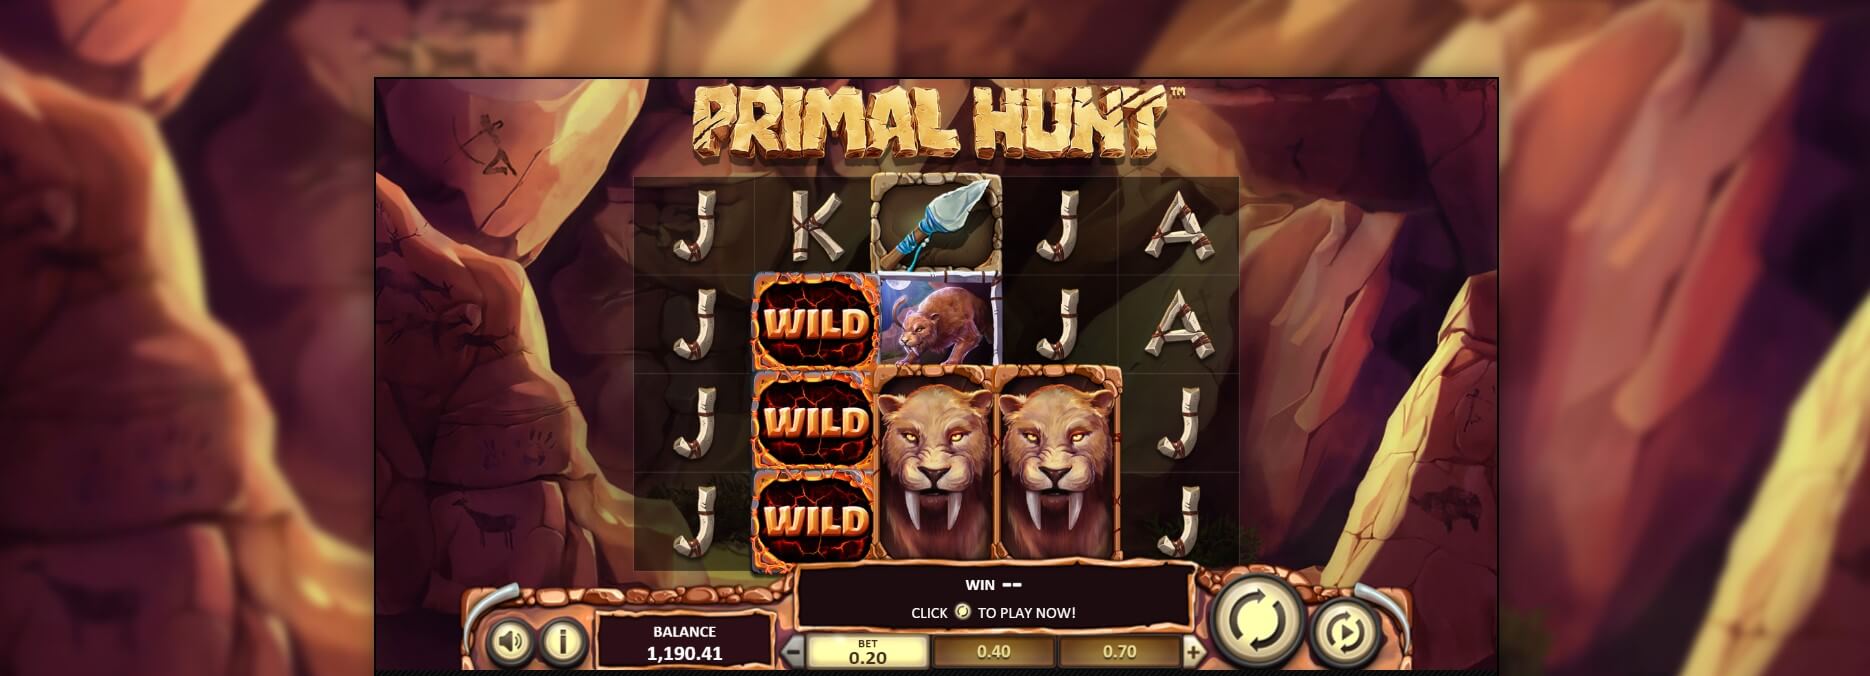 Primal Hunt Spielautomaten Bewertung, Reihen und Symbolen